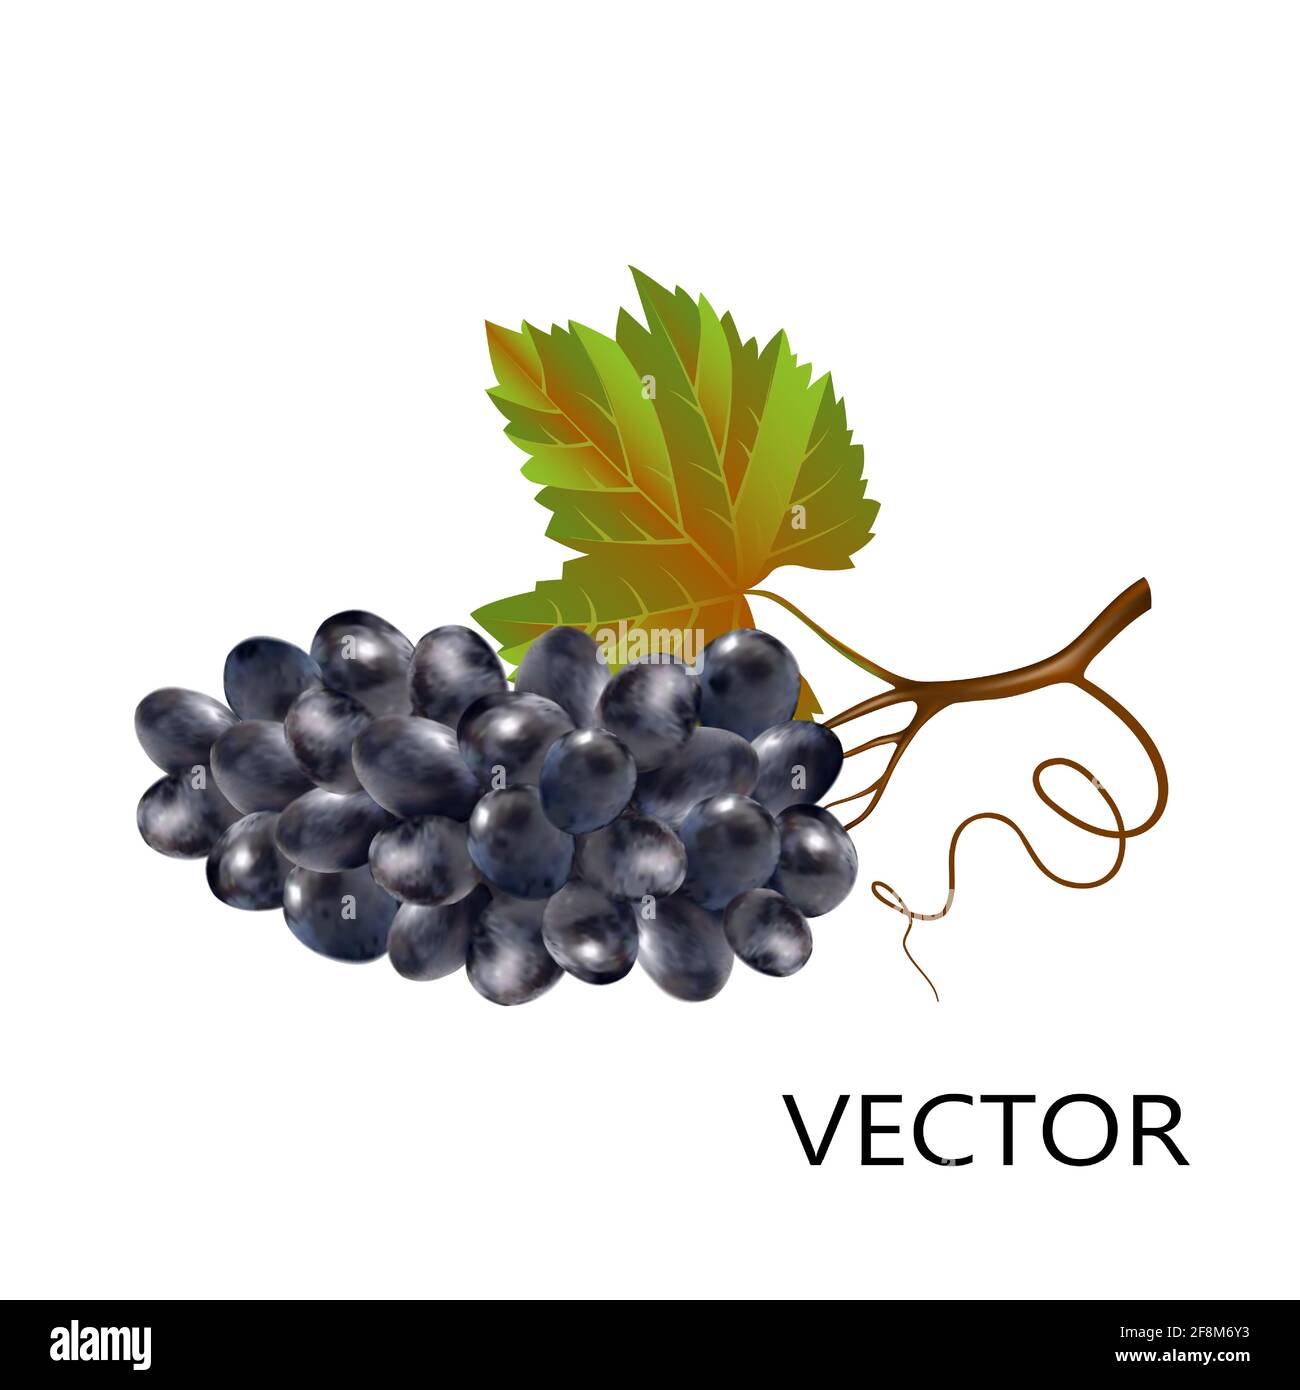 Trauben im 3D-Stil, isoliert auf weißem Hintergrund, Nahaufnahme. Dunkle Weintrauben mit Stiel und Blätter realistische Vektor-Objekt. Stock Vektor